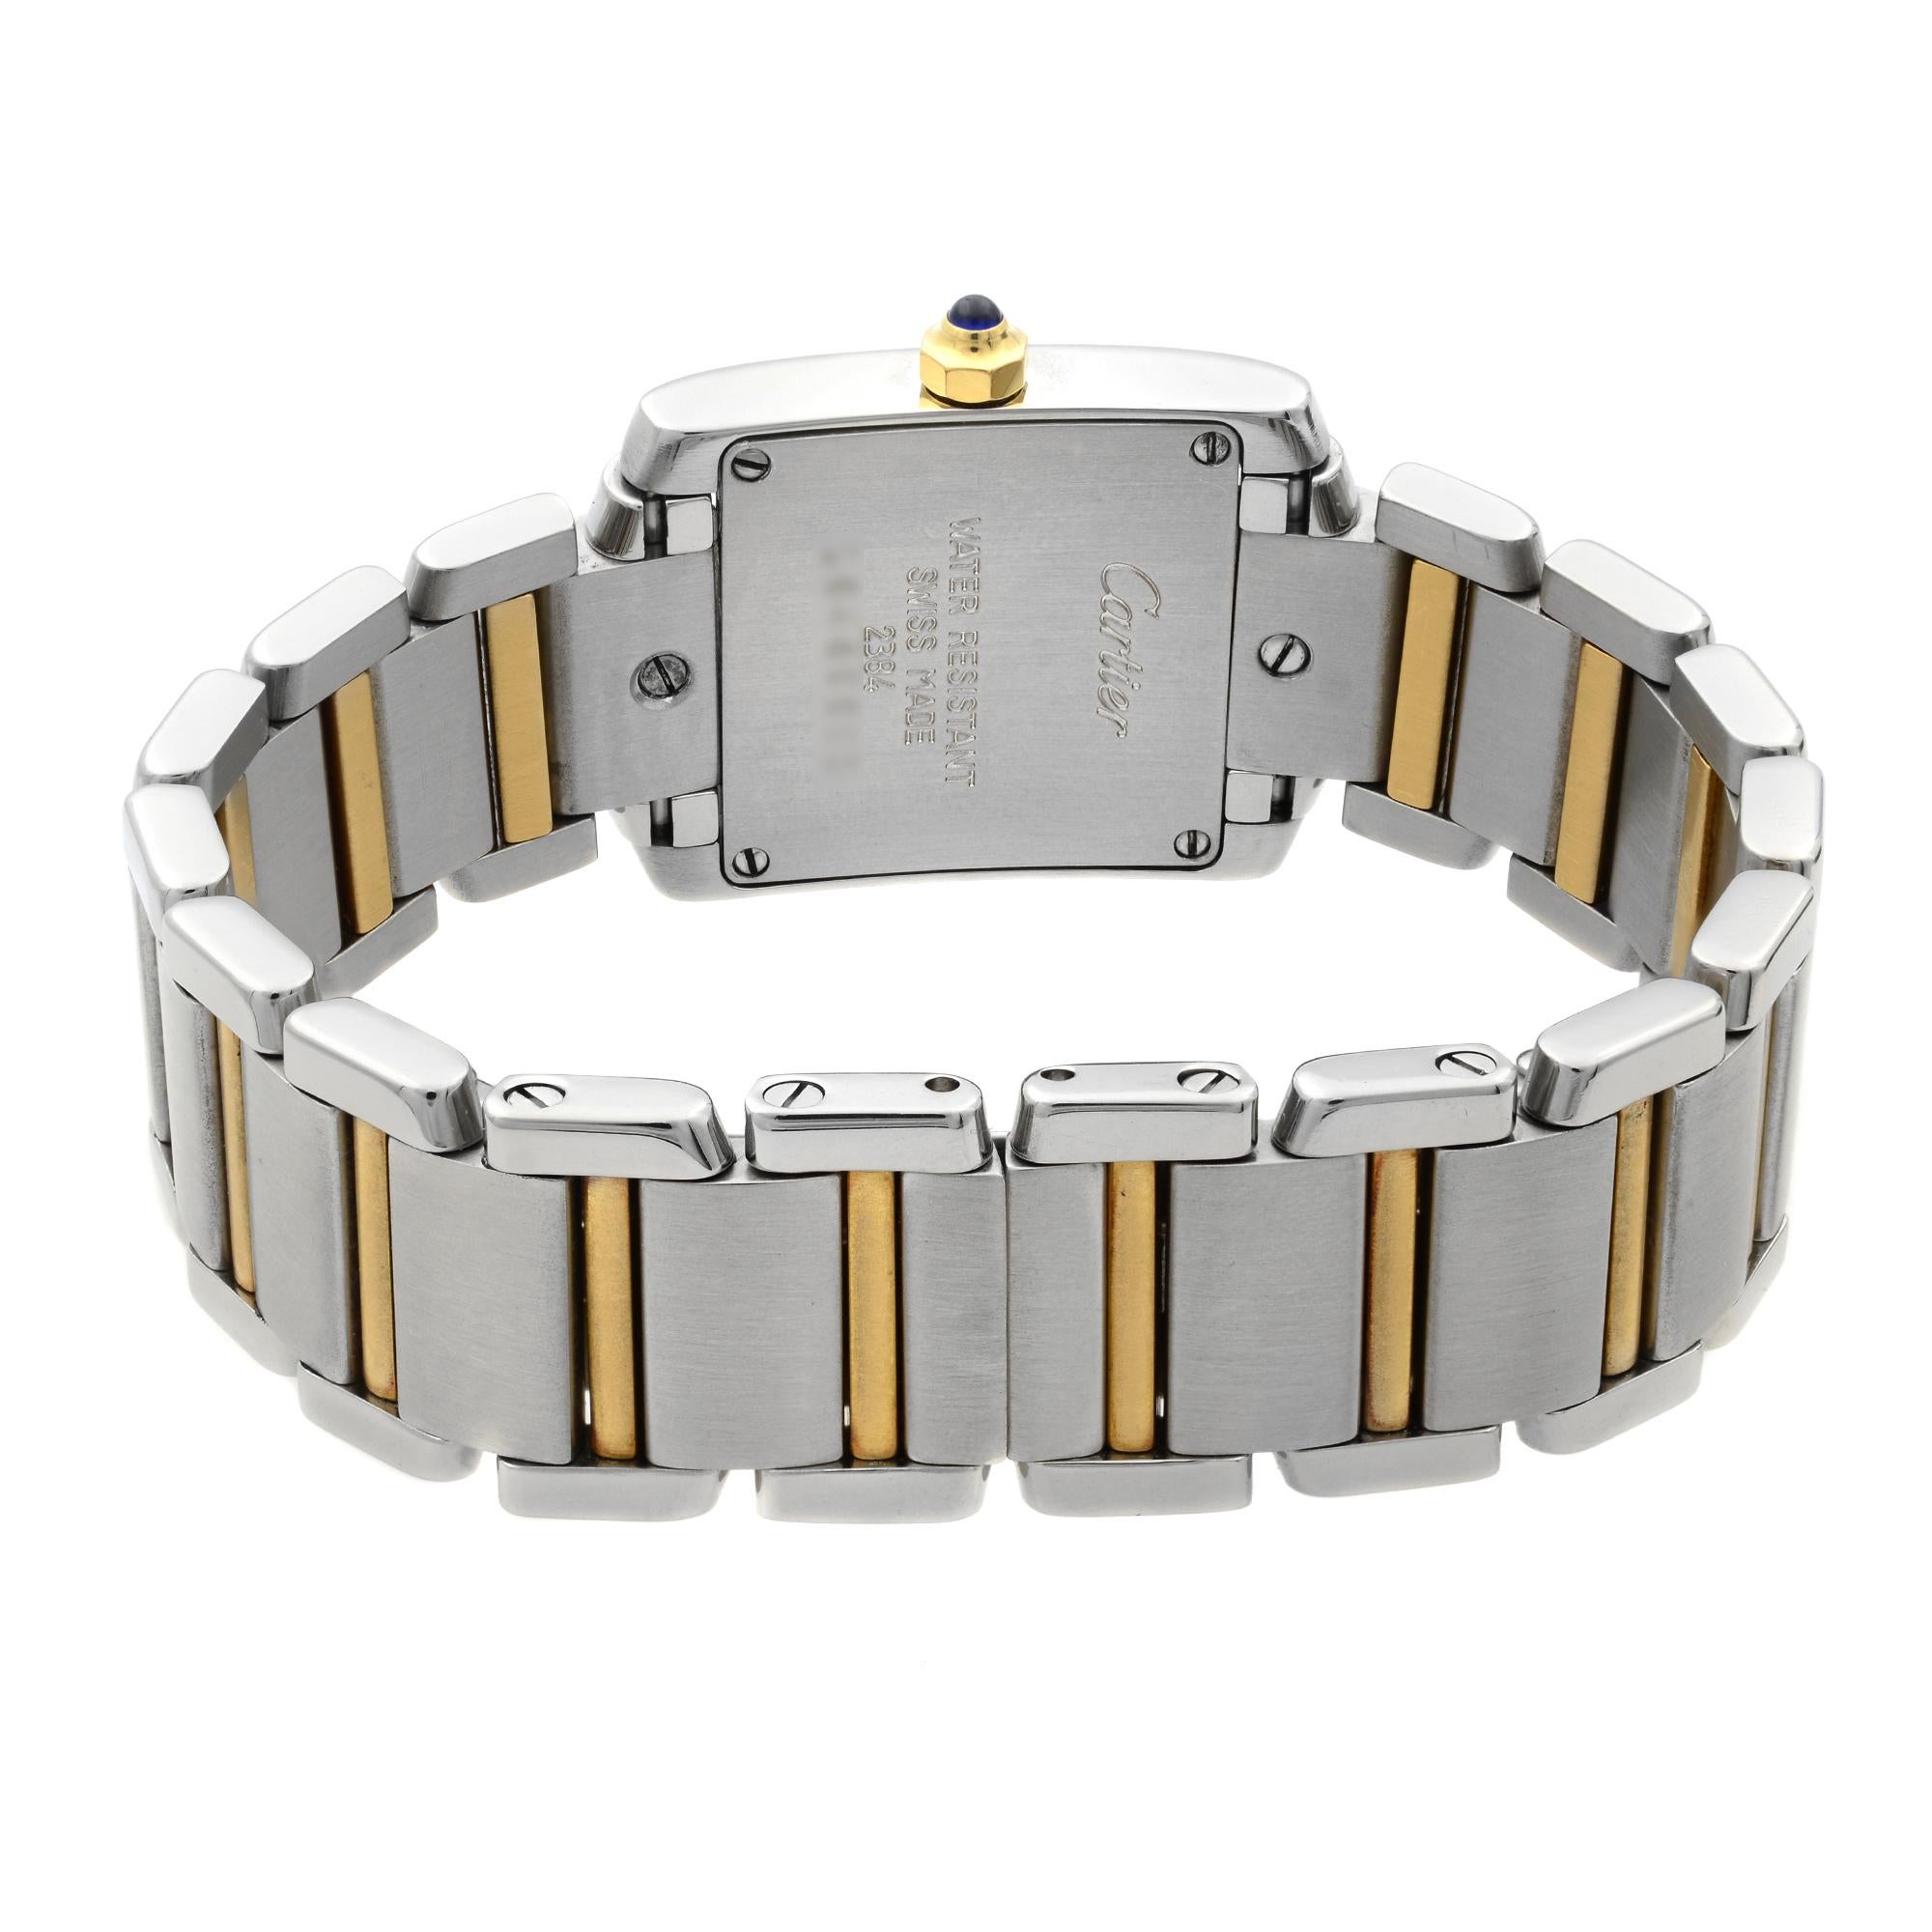 Cartier Tank Francaise 18k Gold Steel Quartz Breige Dial Ladies Watch W51007Q4 2